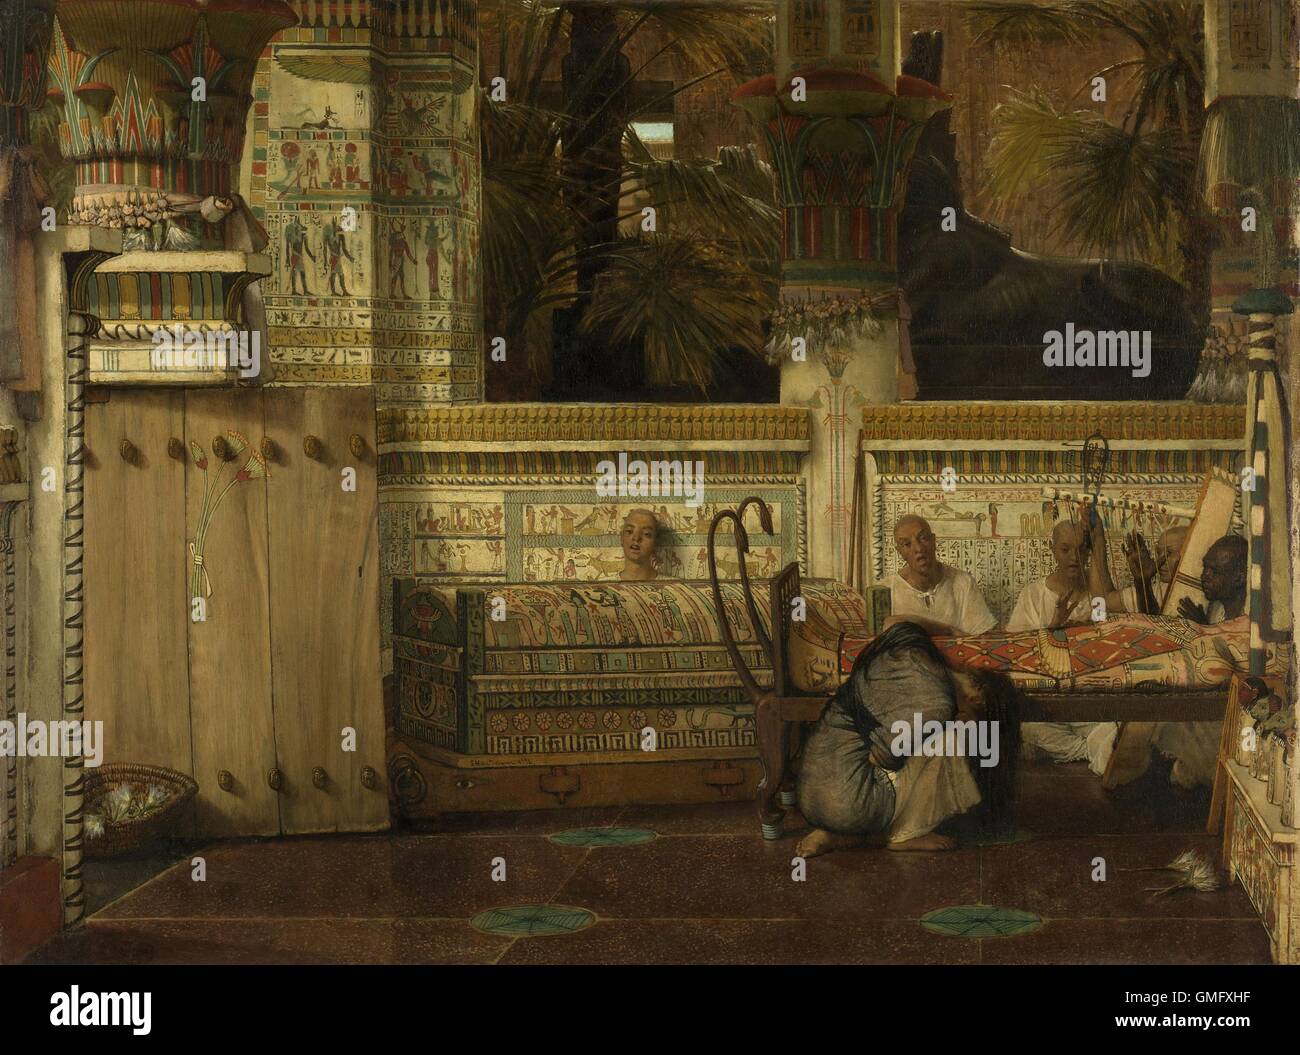 Veuve égyptienne, par Lawrence Alma Tadema, 1872, Anglais peinture huile sur toile. Femme pleure à l'intérieur maman cas de son mari. Les prêtres et les chanteurs et les détails architecturaux d'enrichir la scène (BSLOC 2016 2 241) Banque D'Images